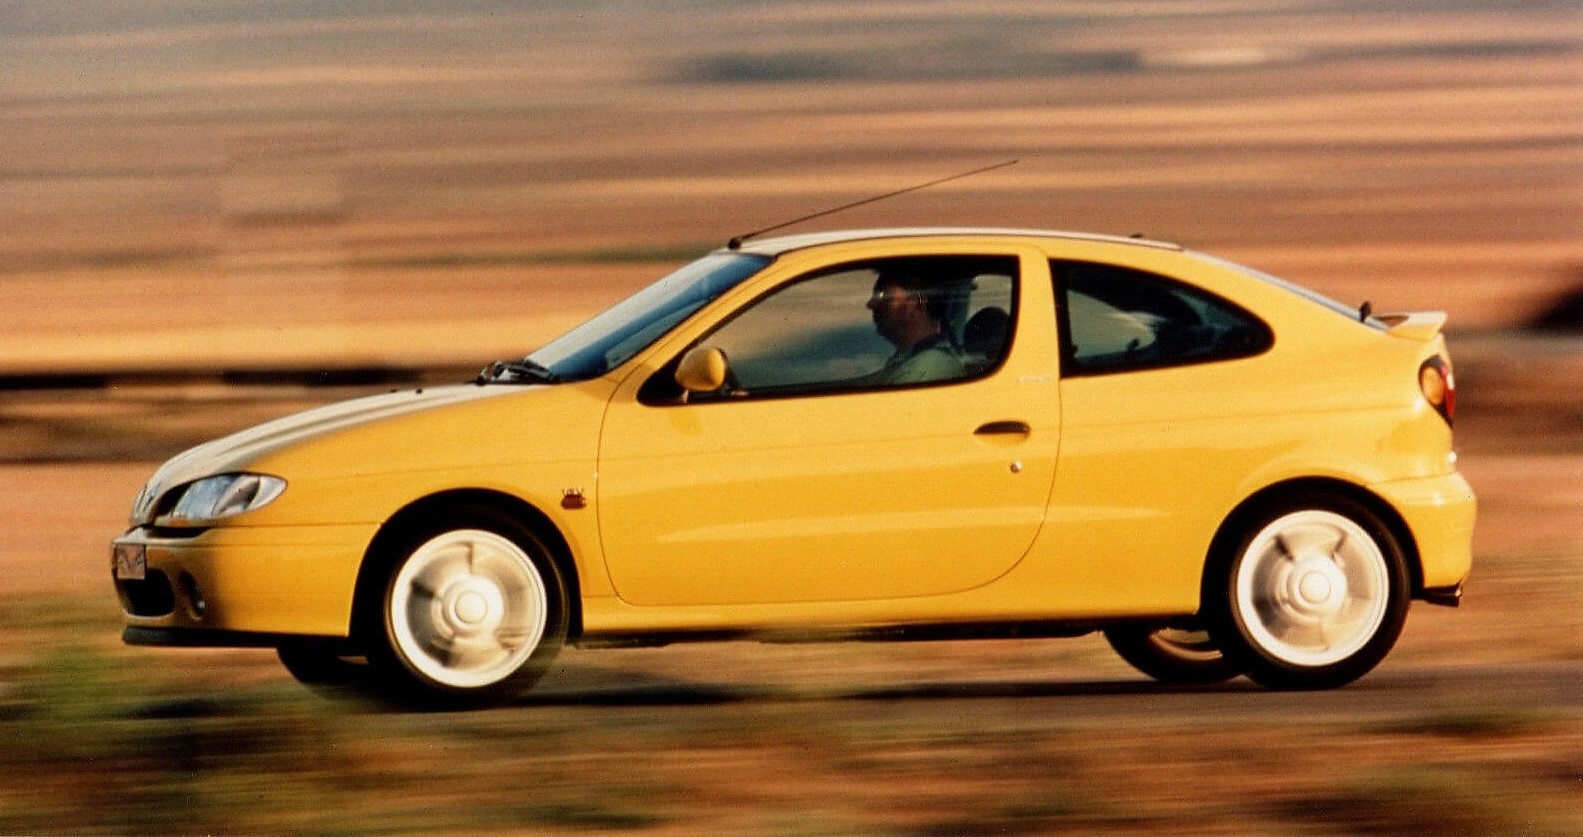 Otro histórico de Renault cumple años. El Megane festeja 25 años